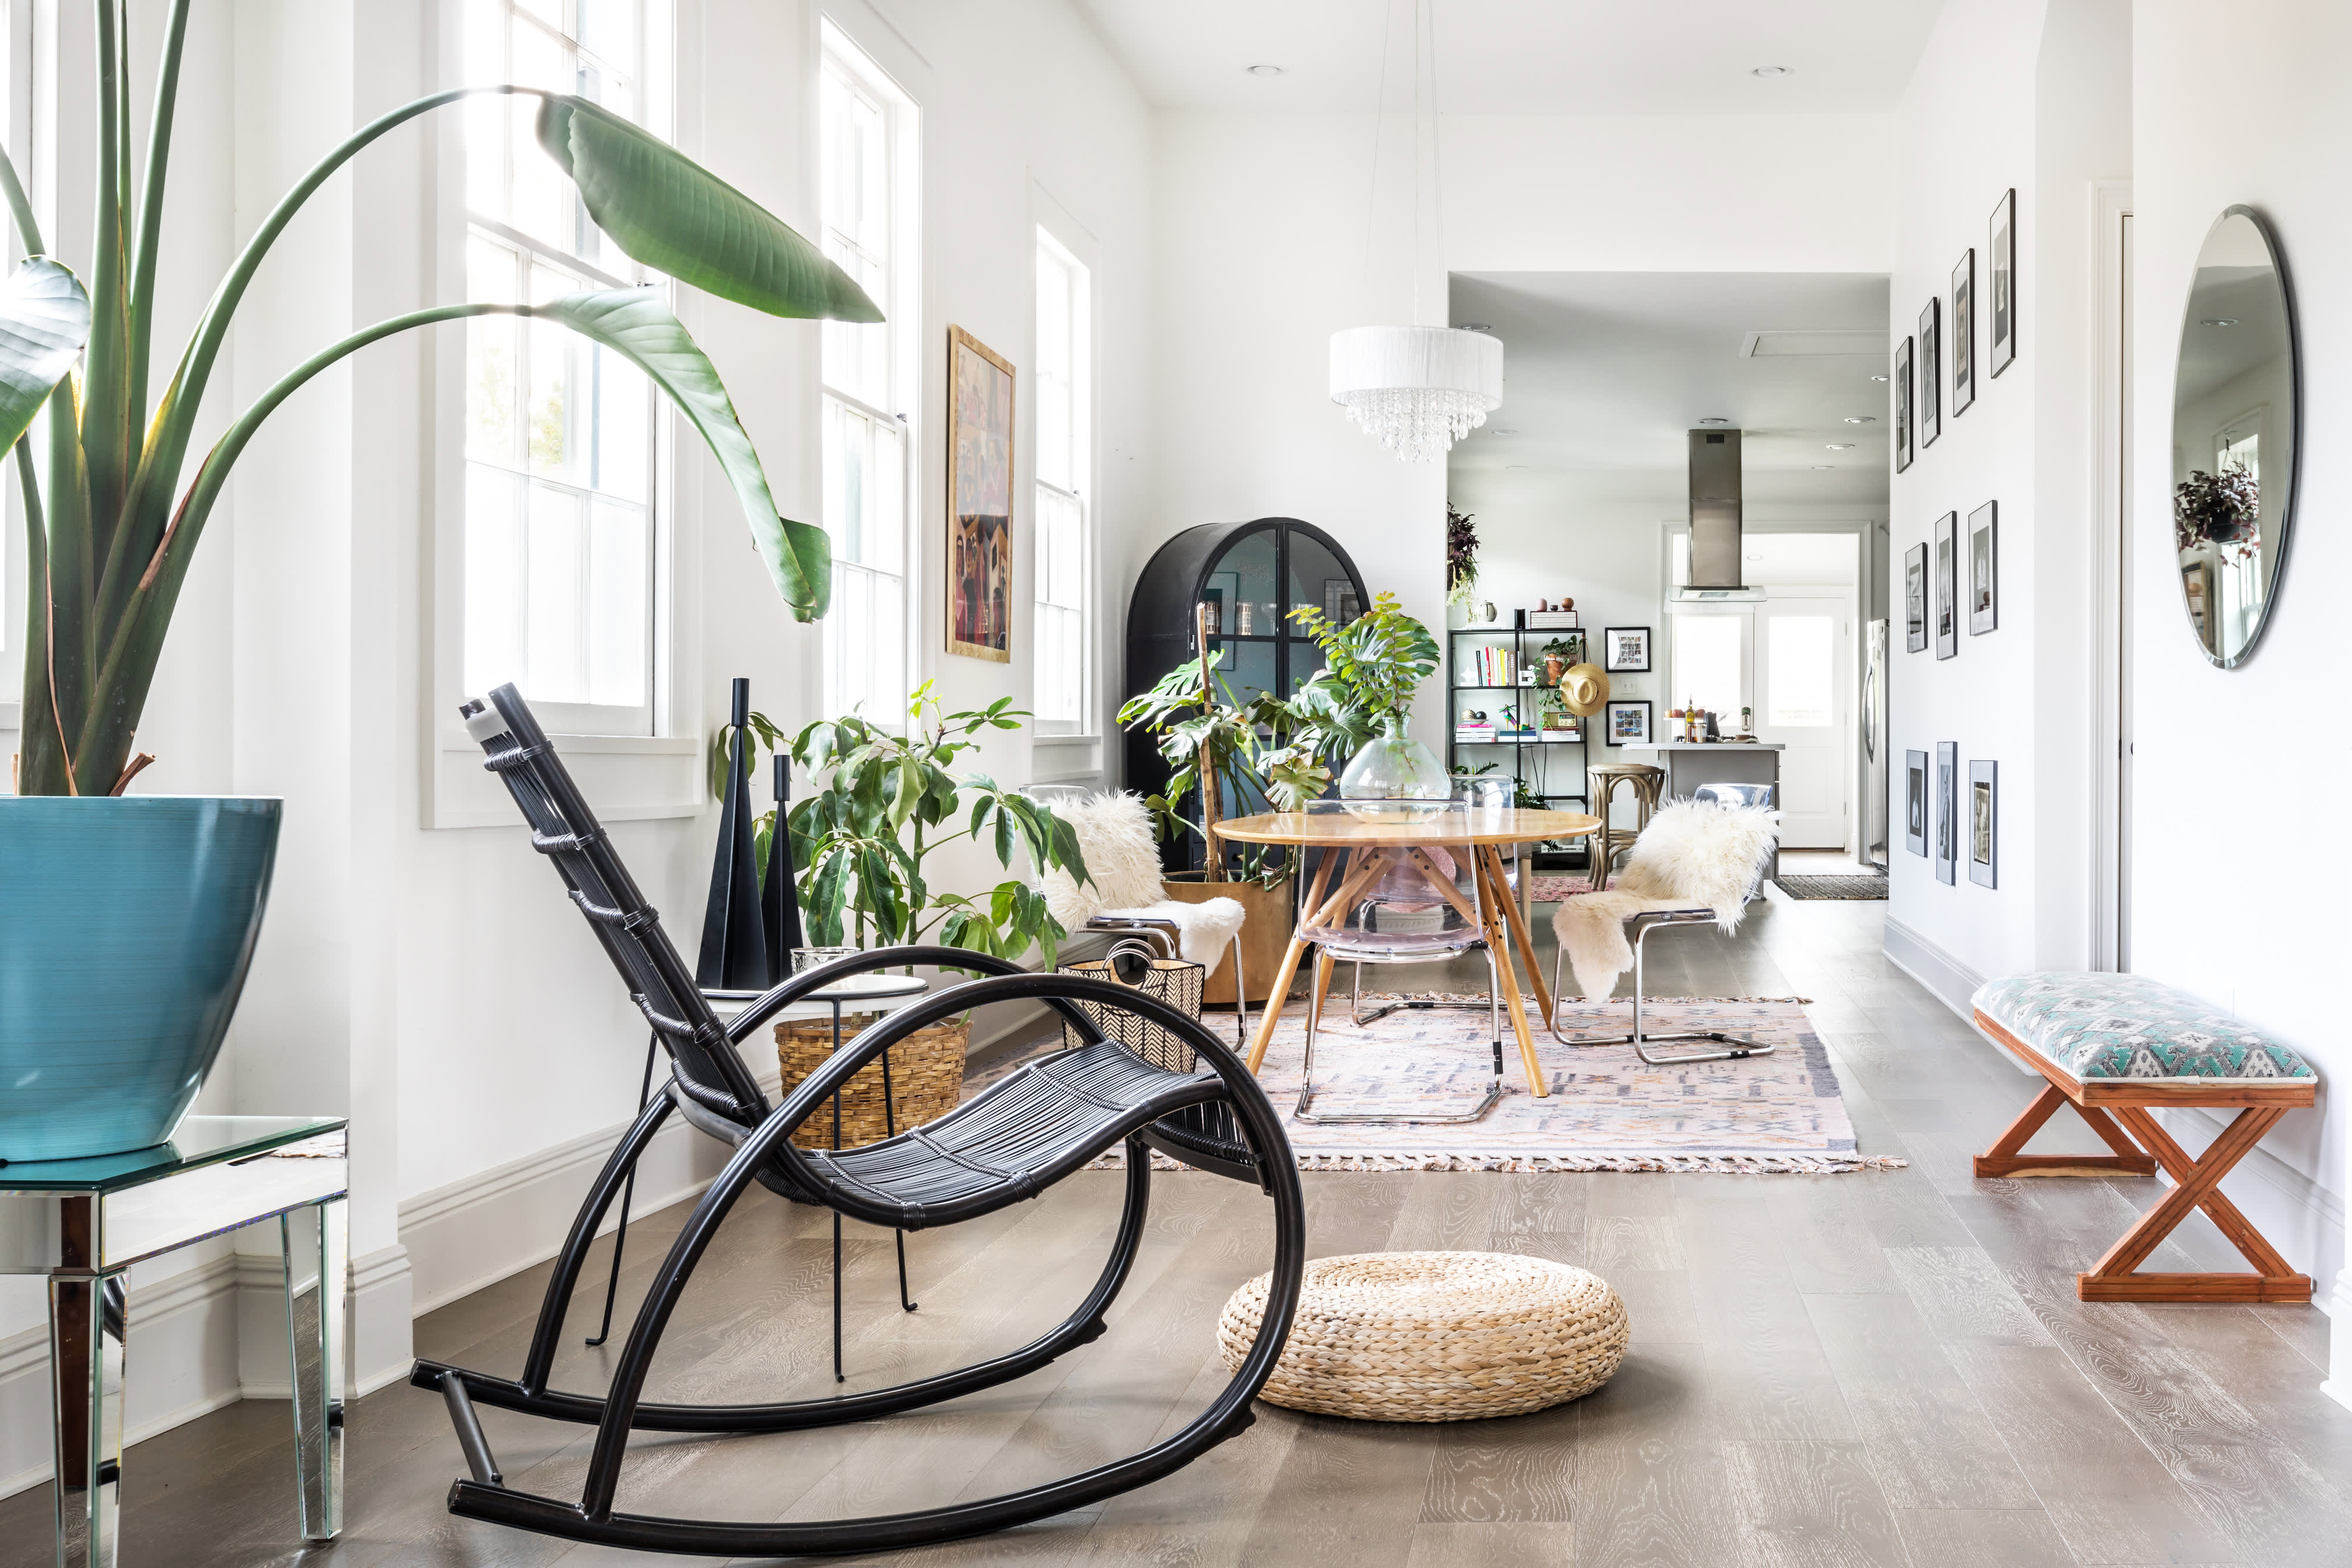 2019 Interior Design Trends - Home Decor Trends 2019 ...